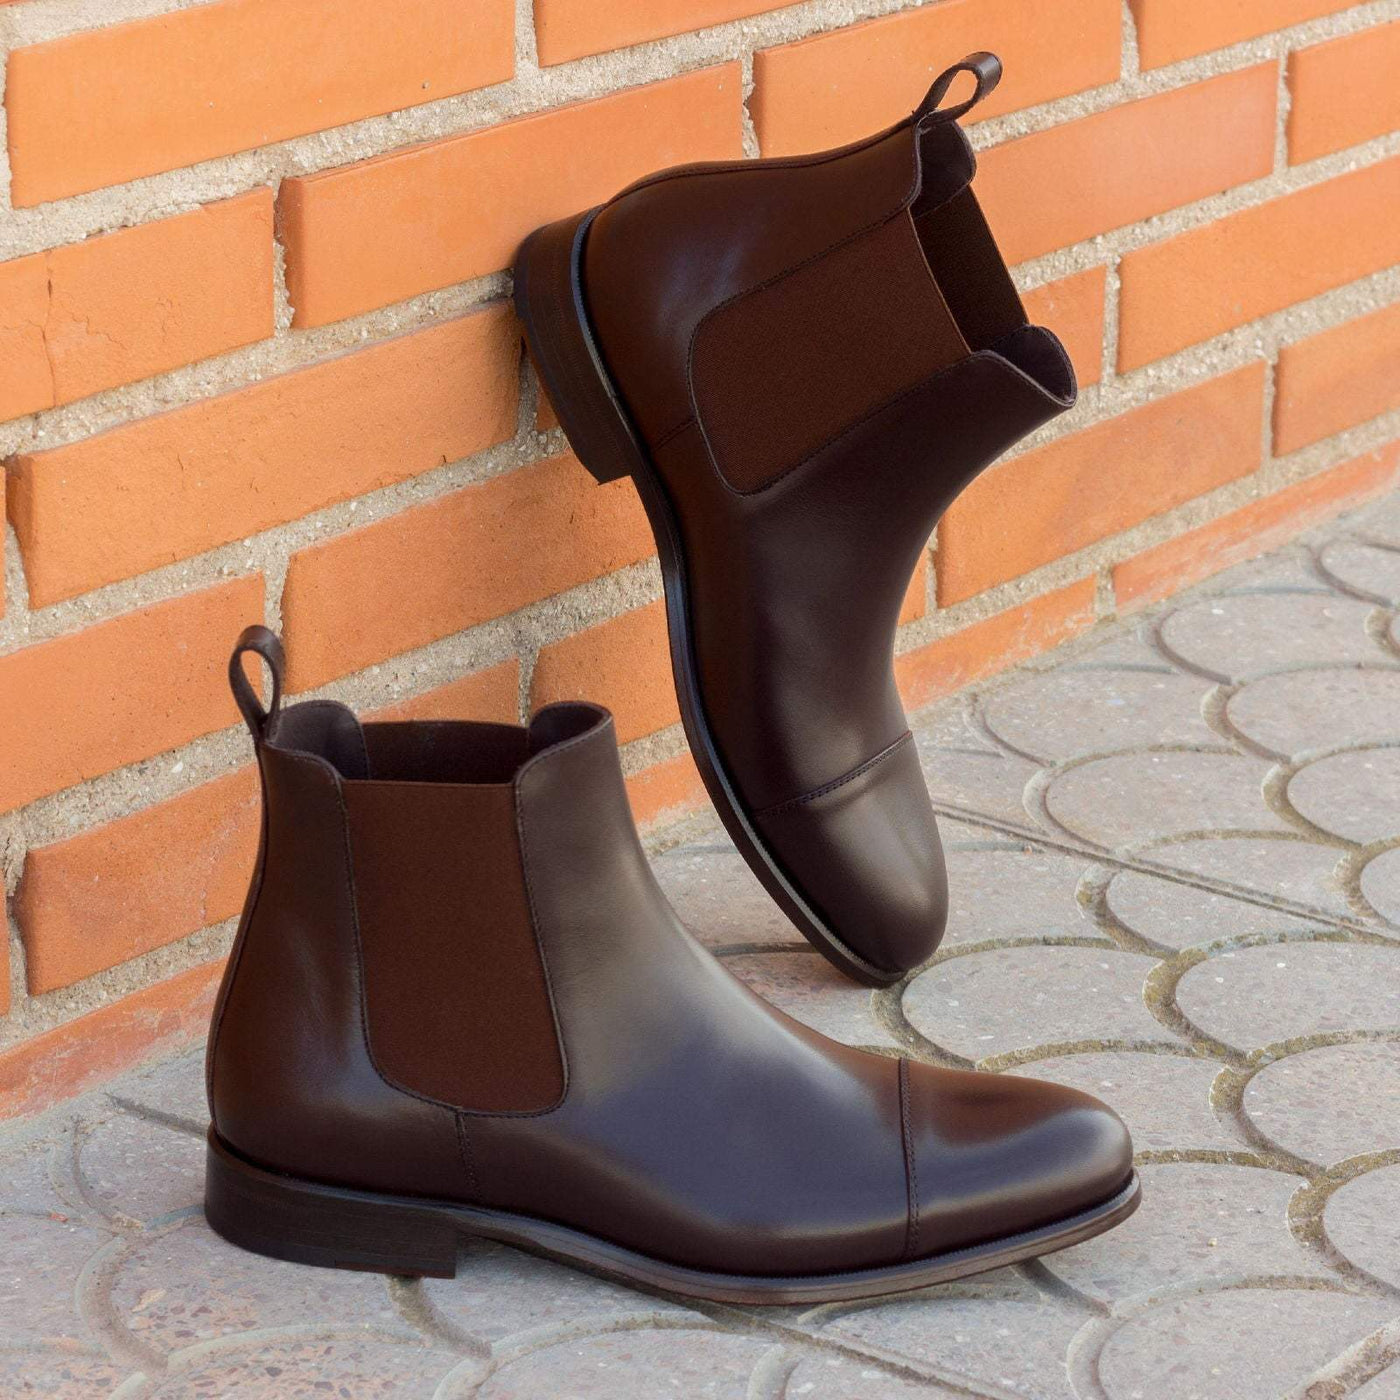 Men's Chelsea Boots Classic Leather Dark Brown 2310 1- MERRIMIUM--GID-1635-2310